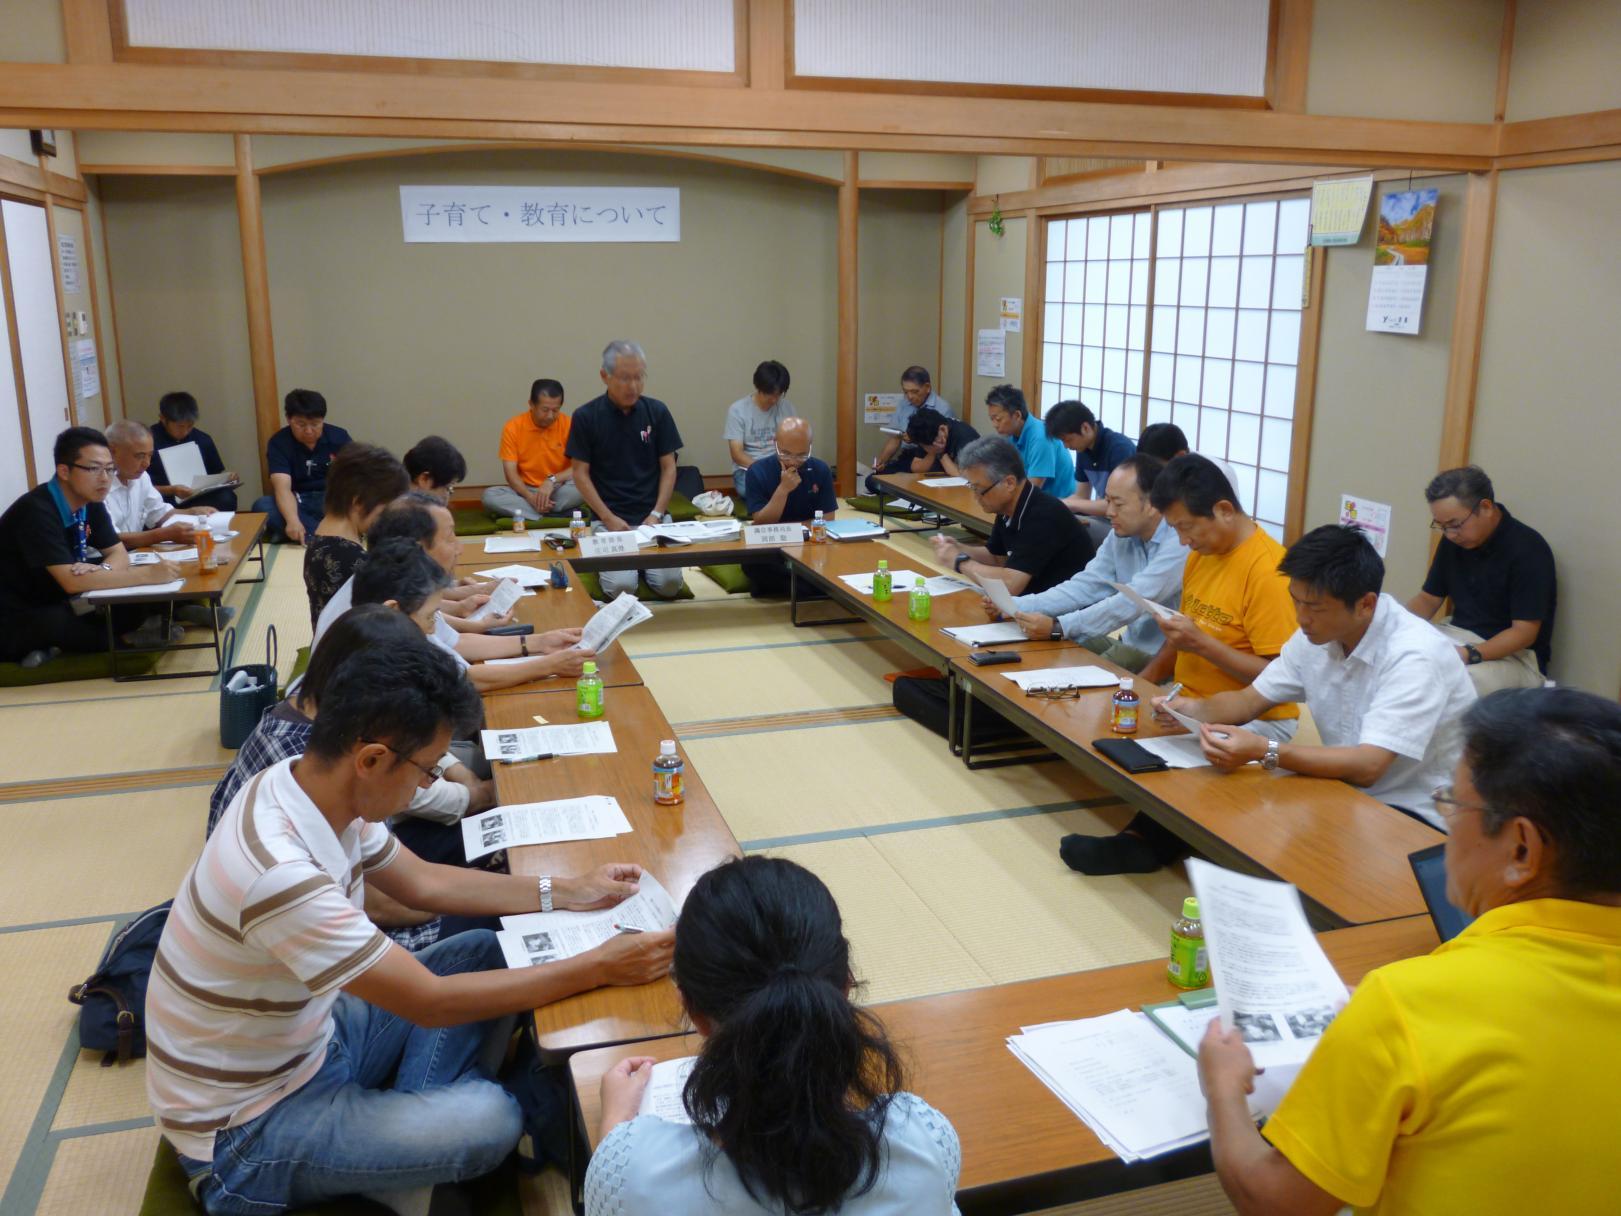 真崎コミュニティセンターで行われた懇談会(分科会)で、和室の部屋にロの字に配置された机の前に座って資料を見ている参加者たちの写真